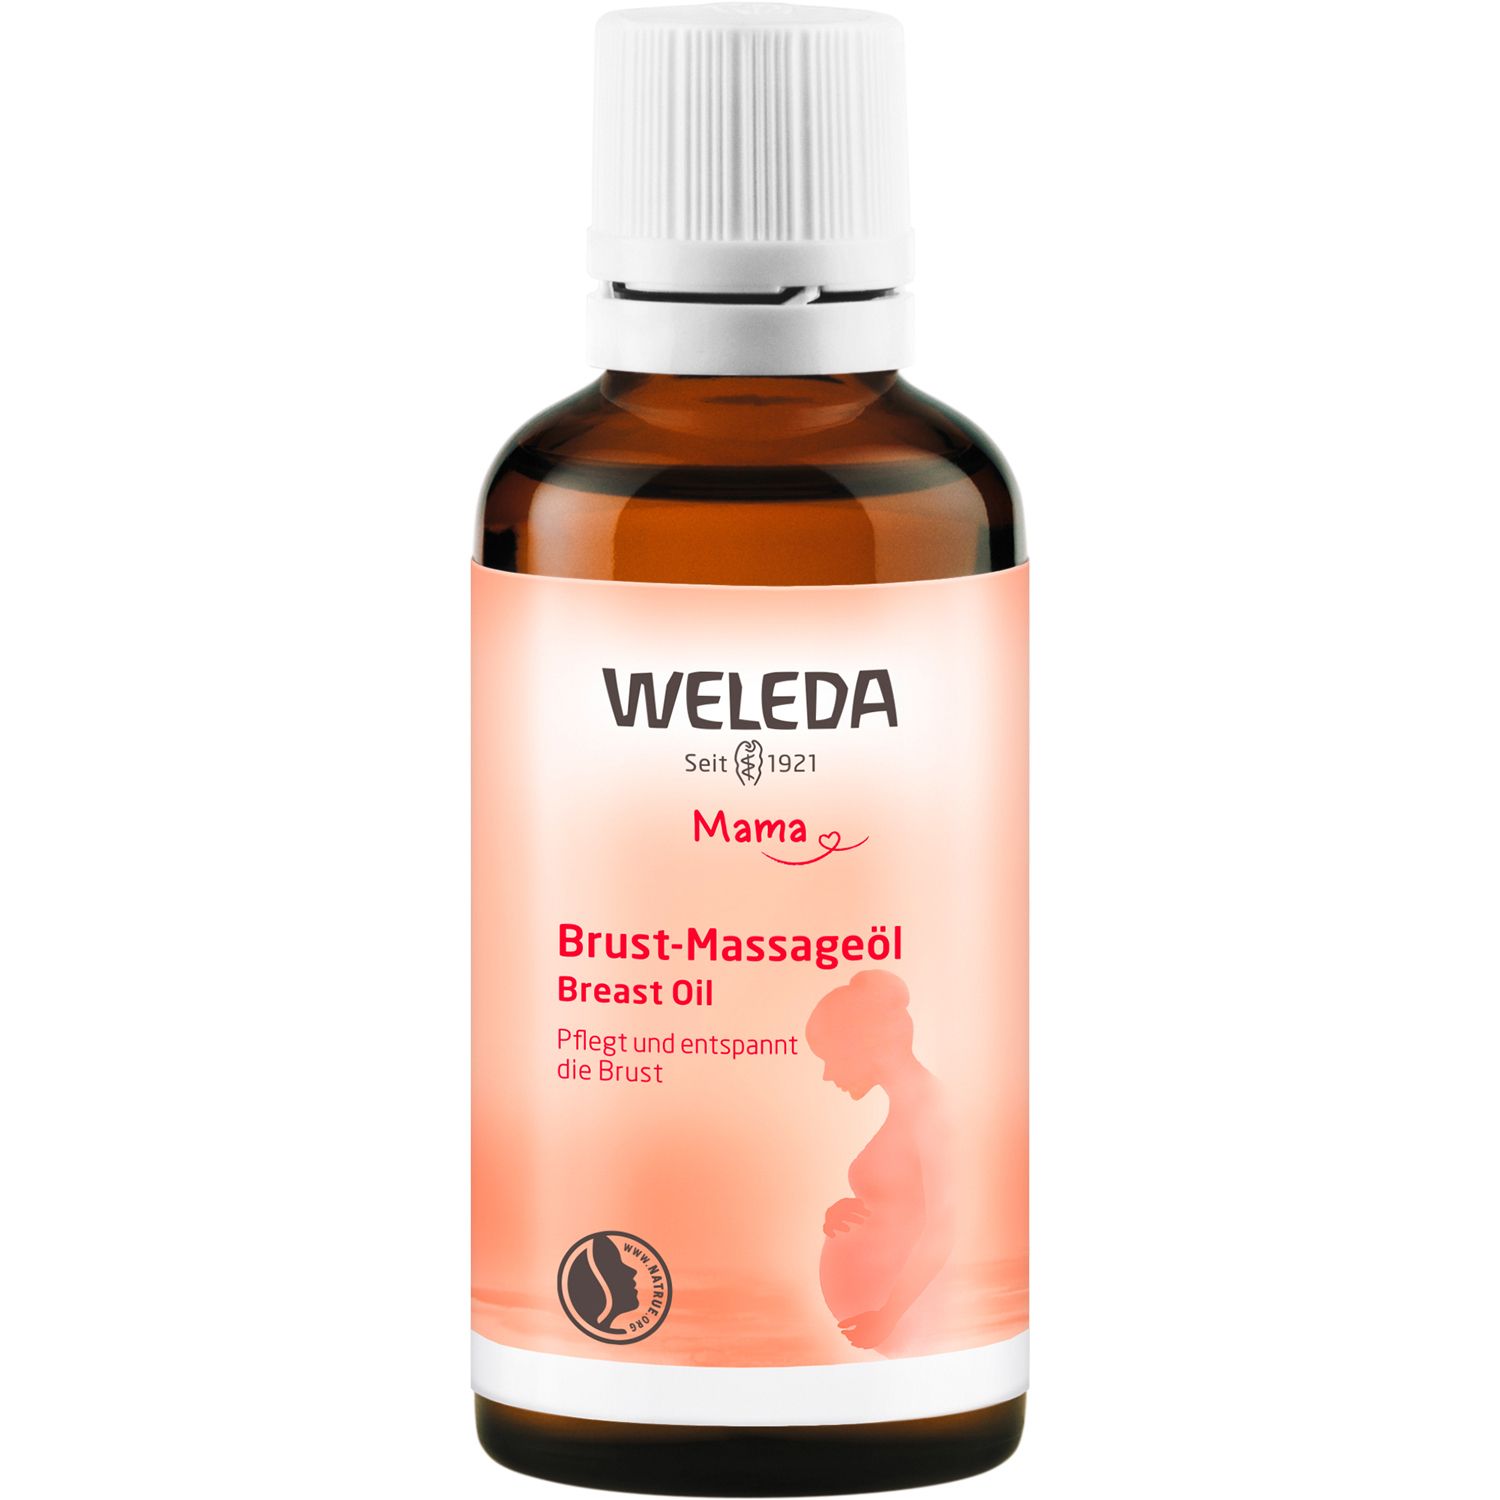 Weleda Brust-Massageöl - sanfte Massagen fördern die Durchwärmung und  lindern so Spannungsgefühle